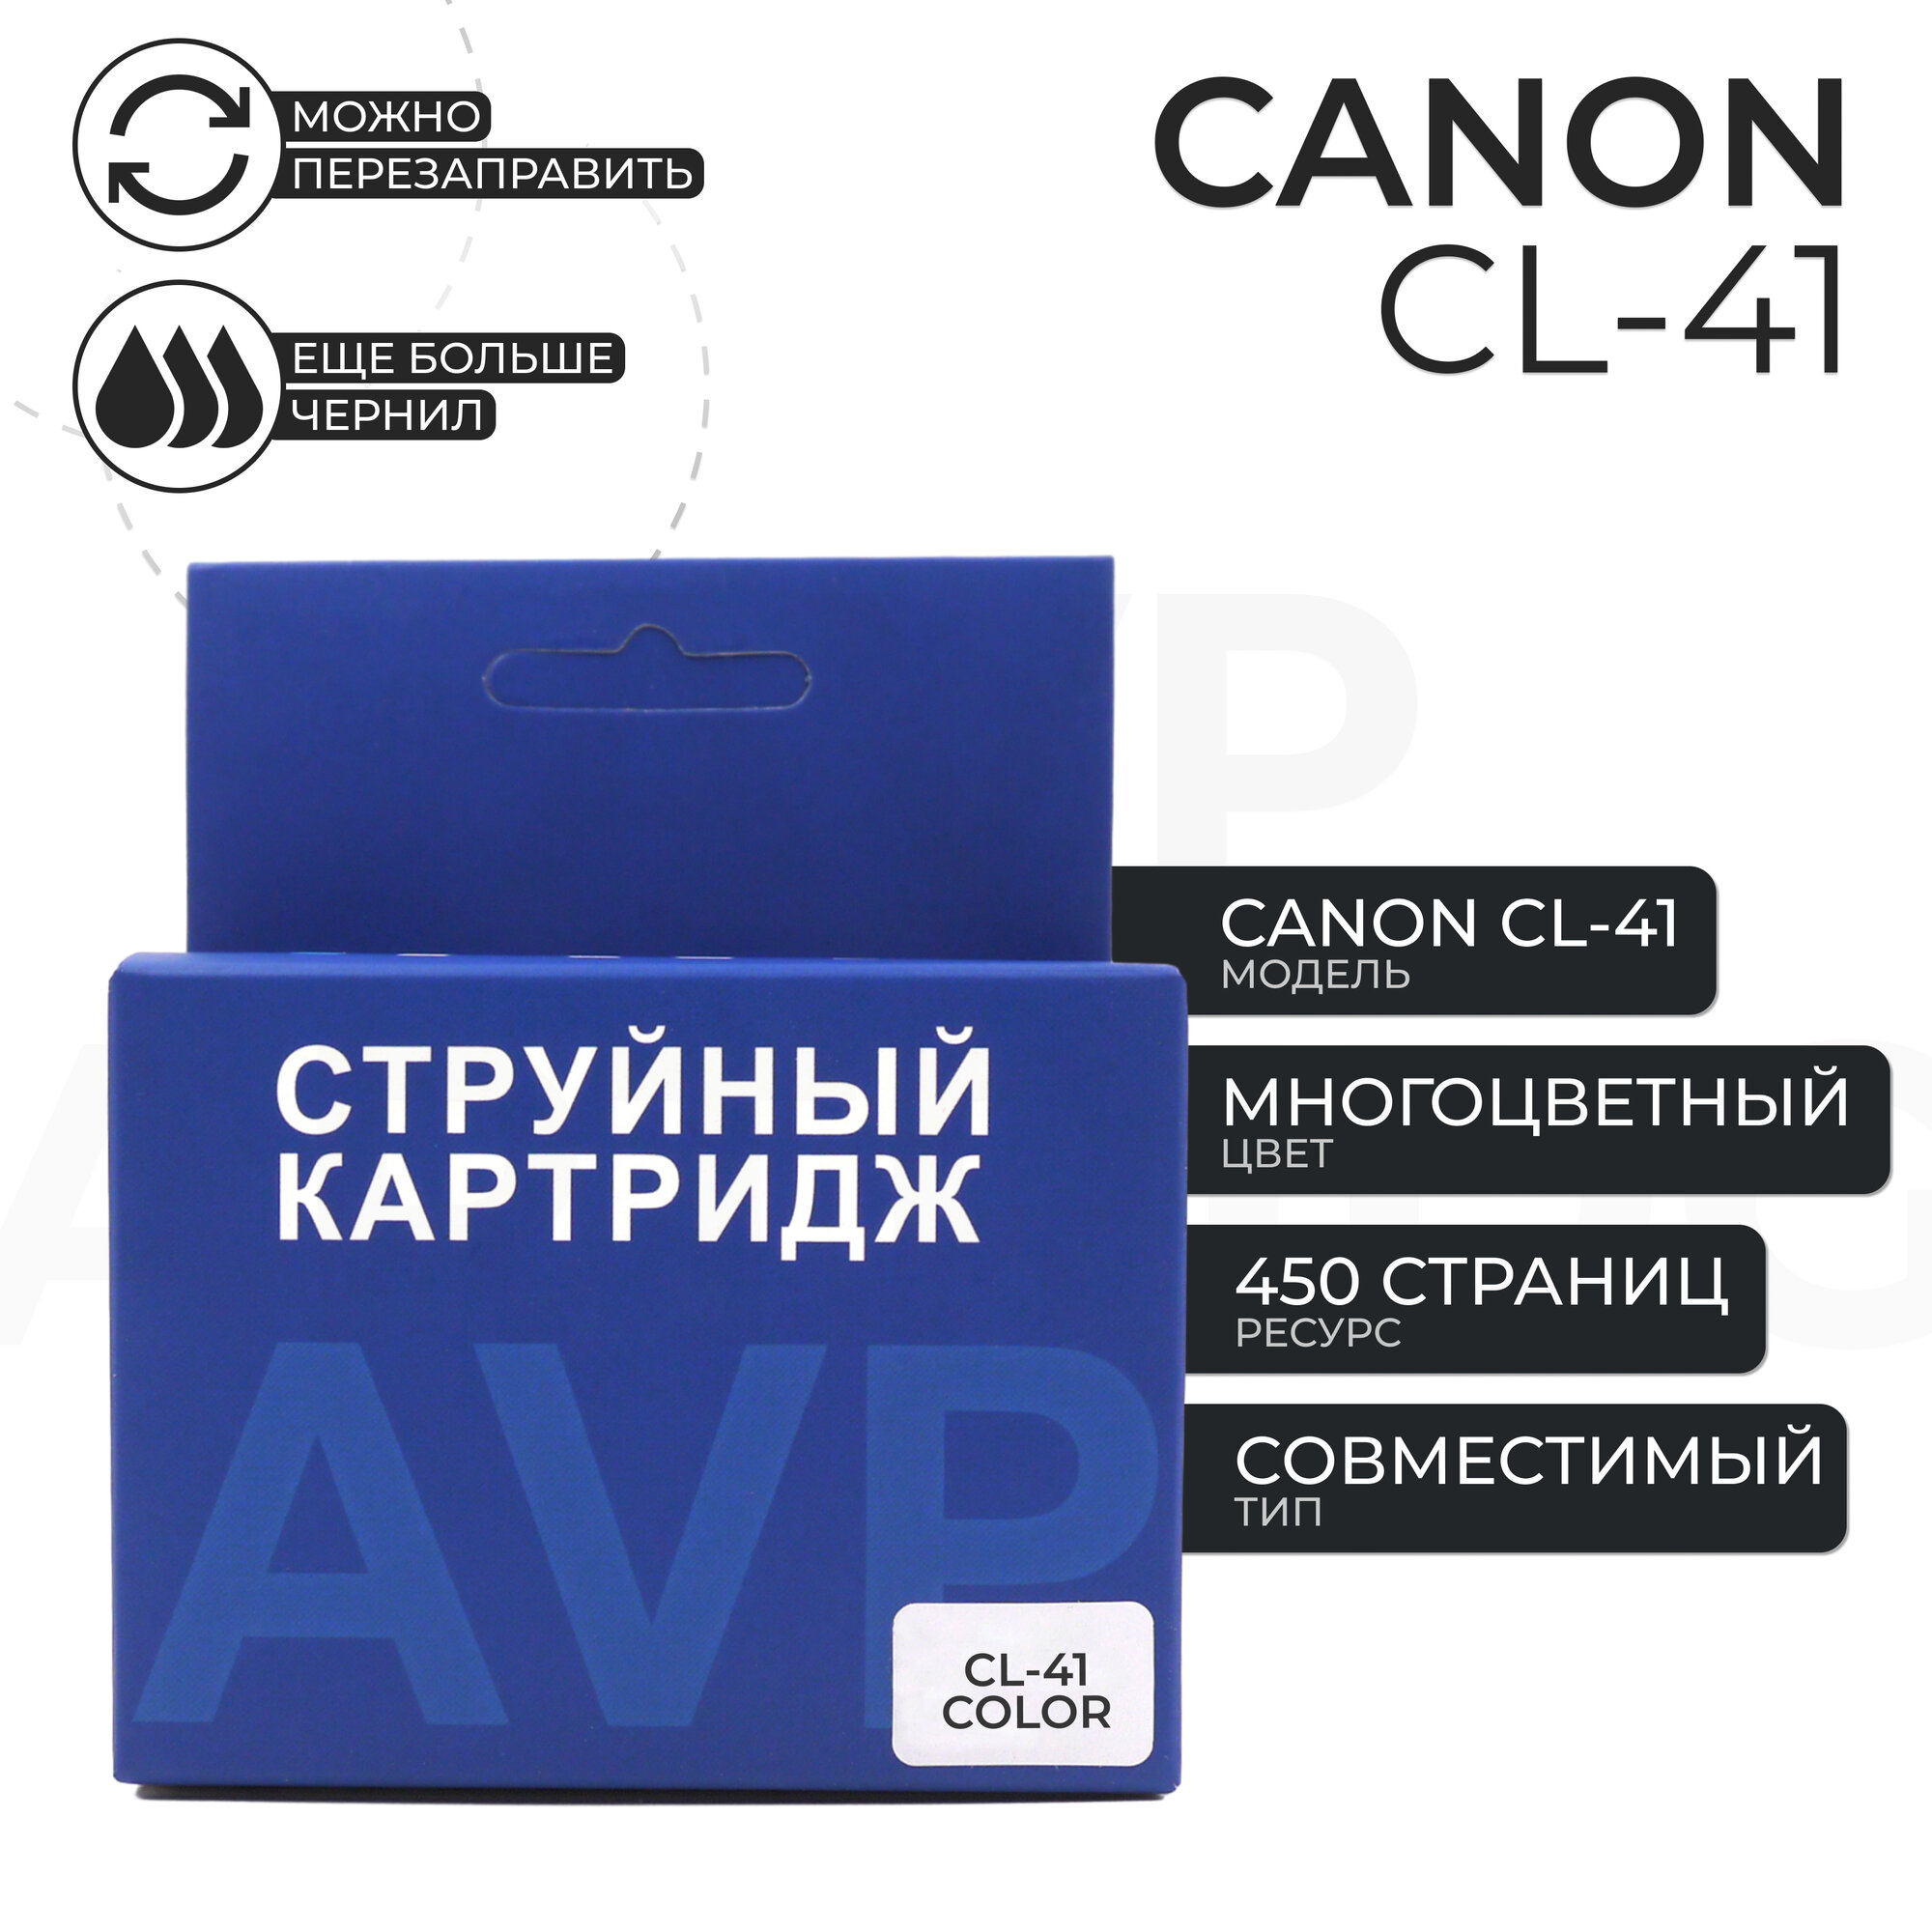 Картридж AVP CL-41 для принтера Canon, цветной